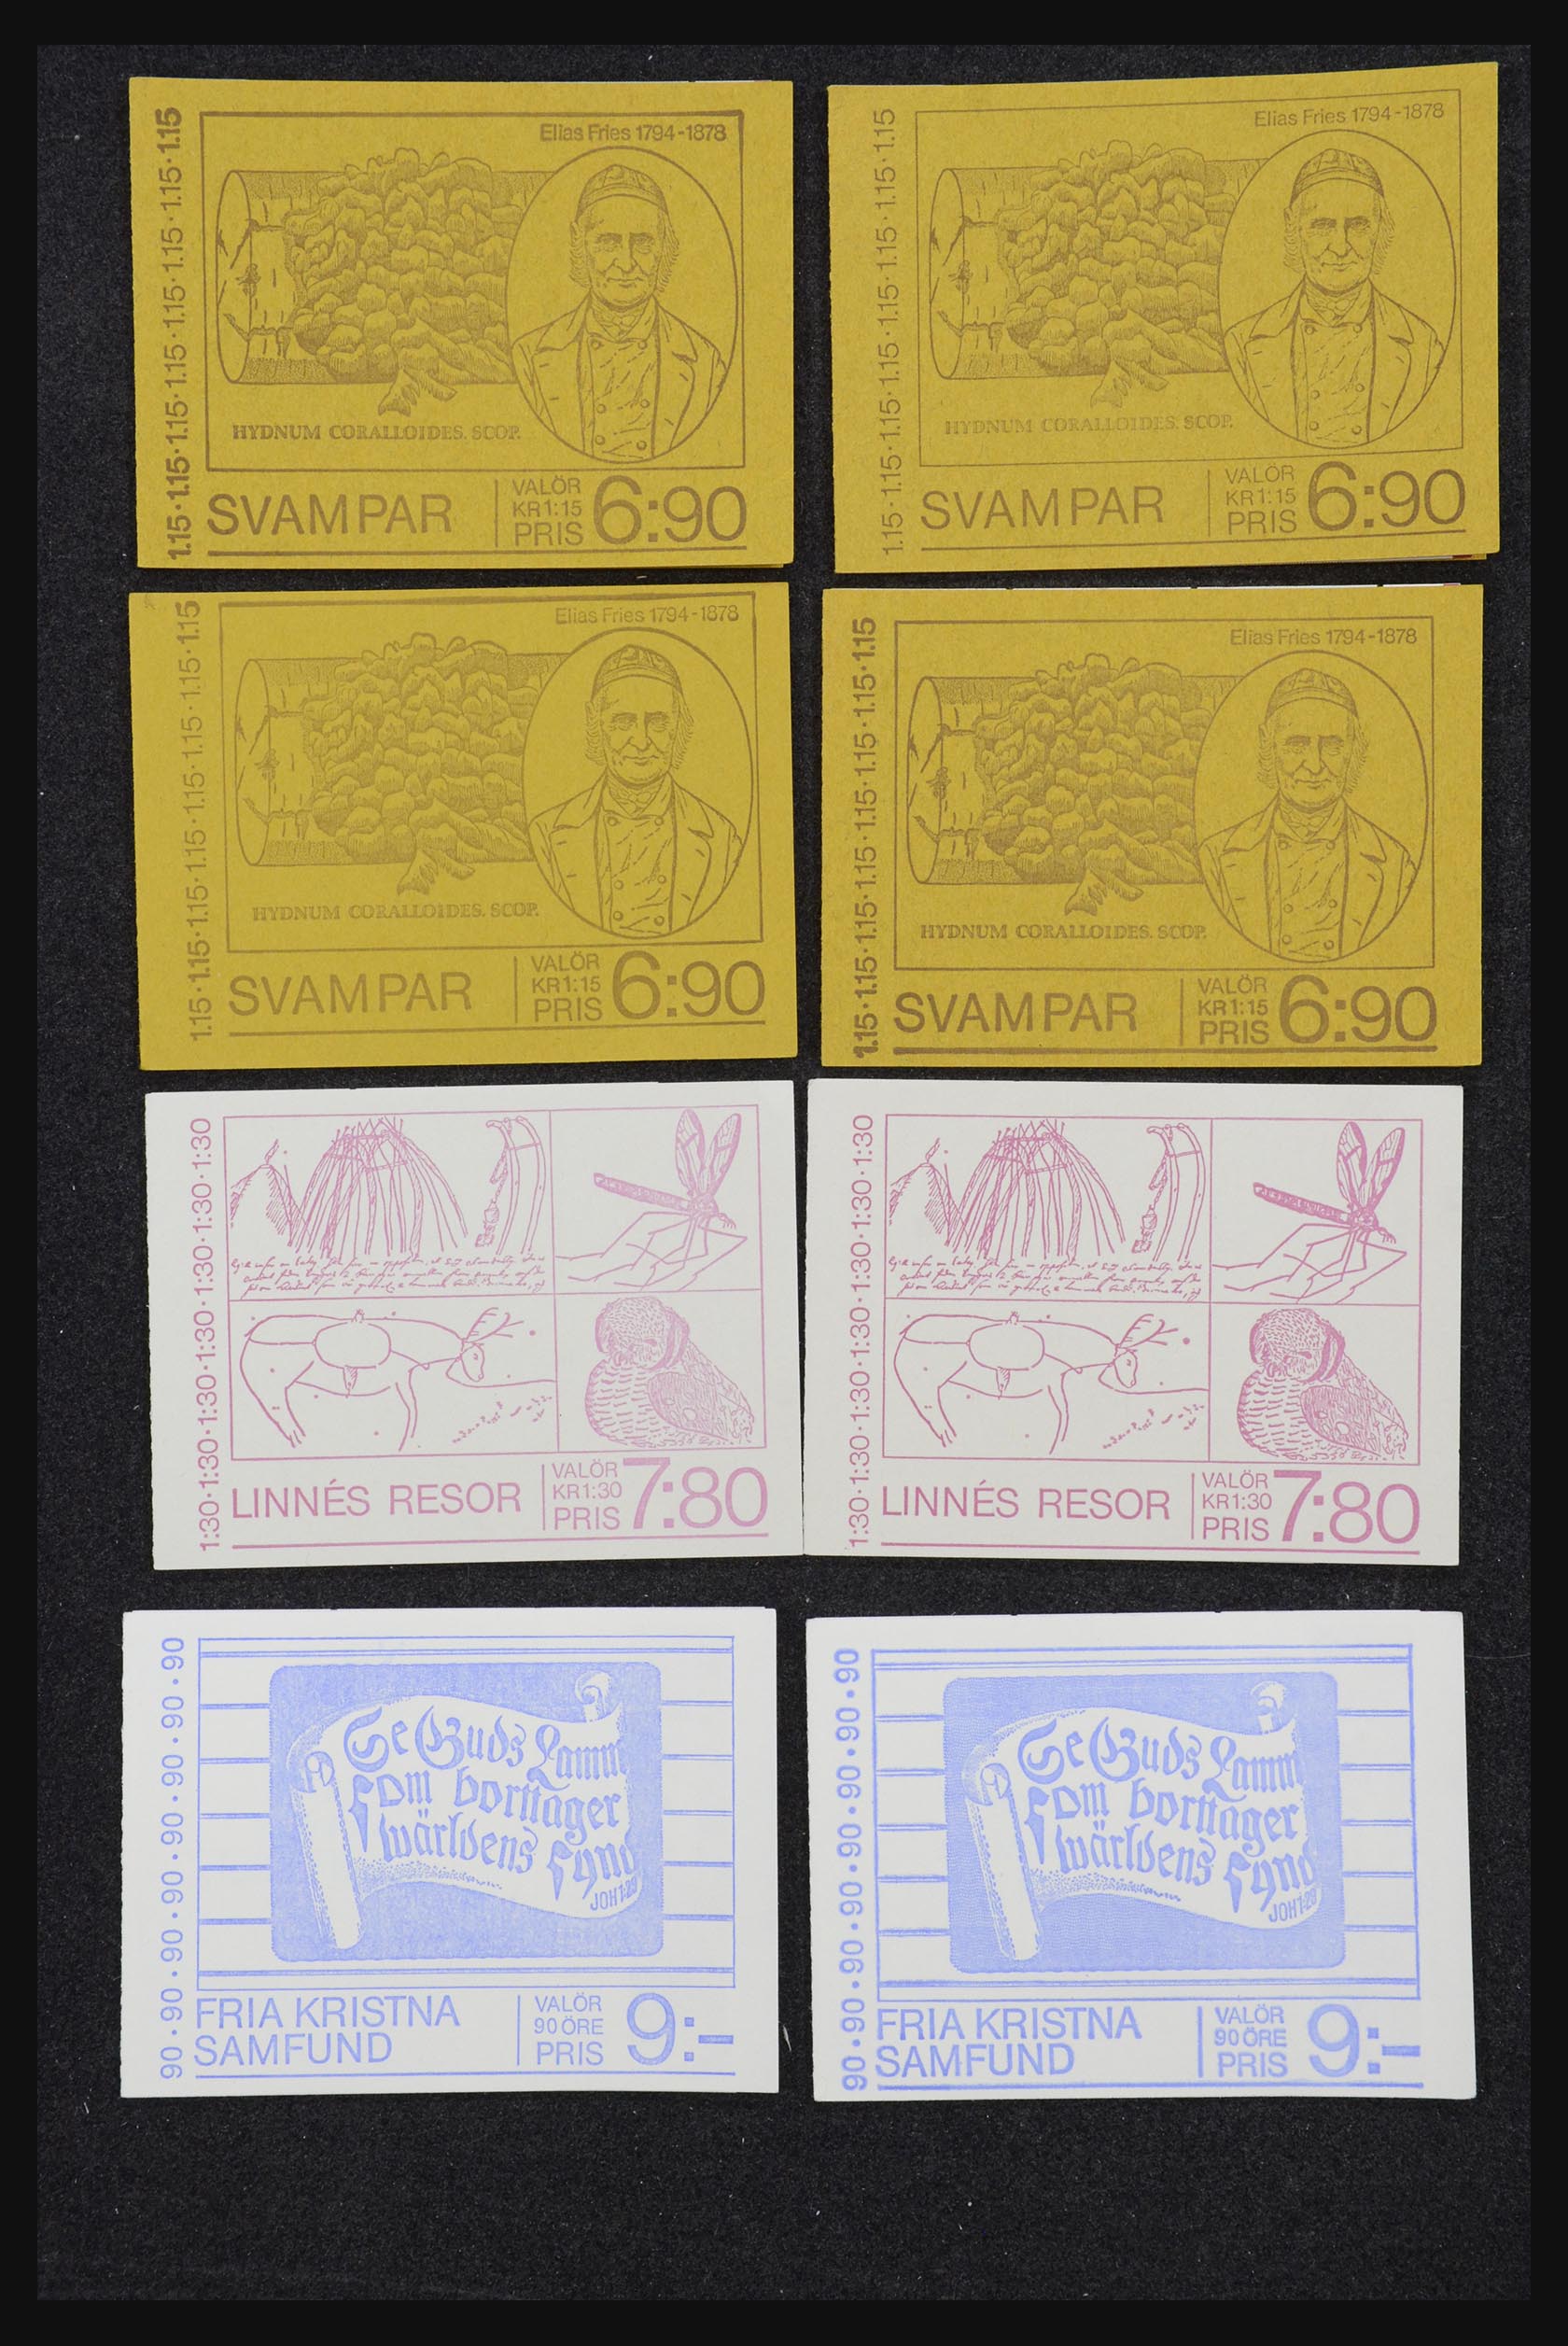 32026 062 - 32026 Sweden stampbooklets 1949-1990.